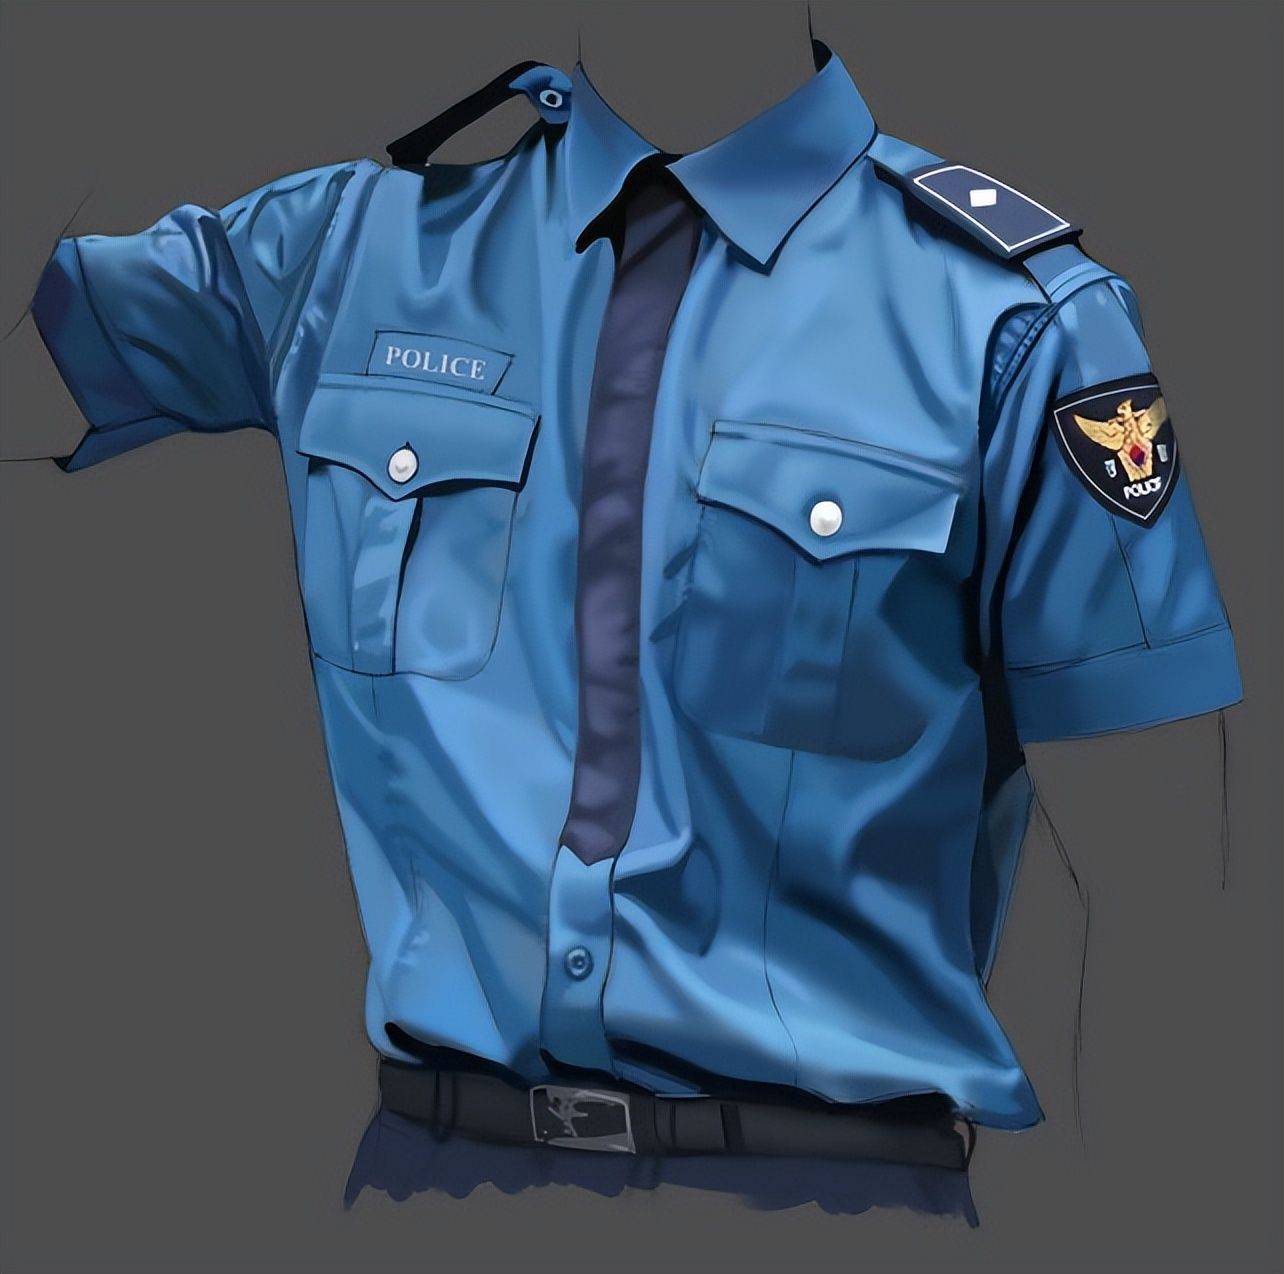 动漫制服怎么画?教你警察制服的画法步骤!